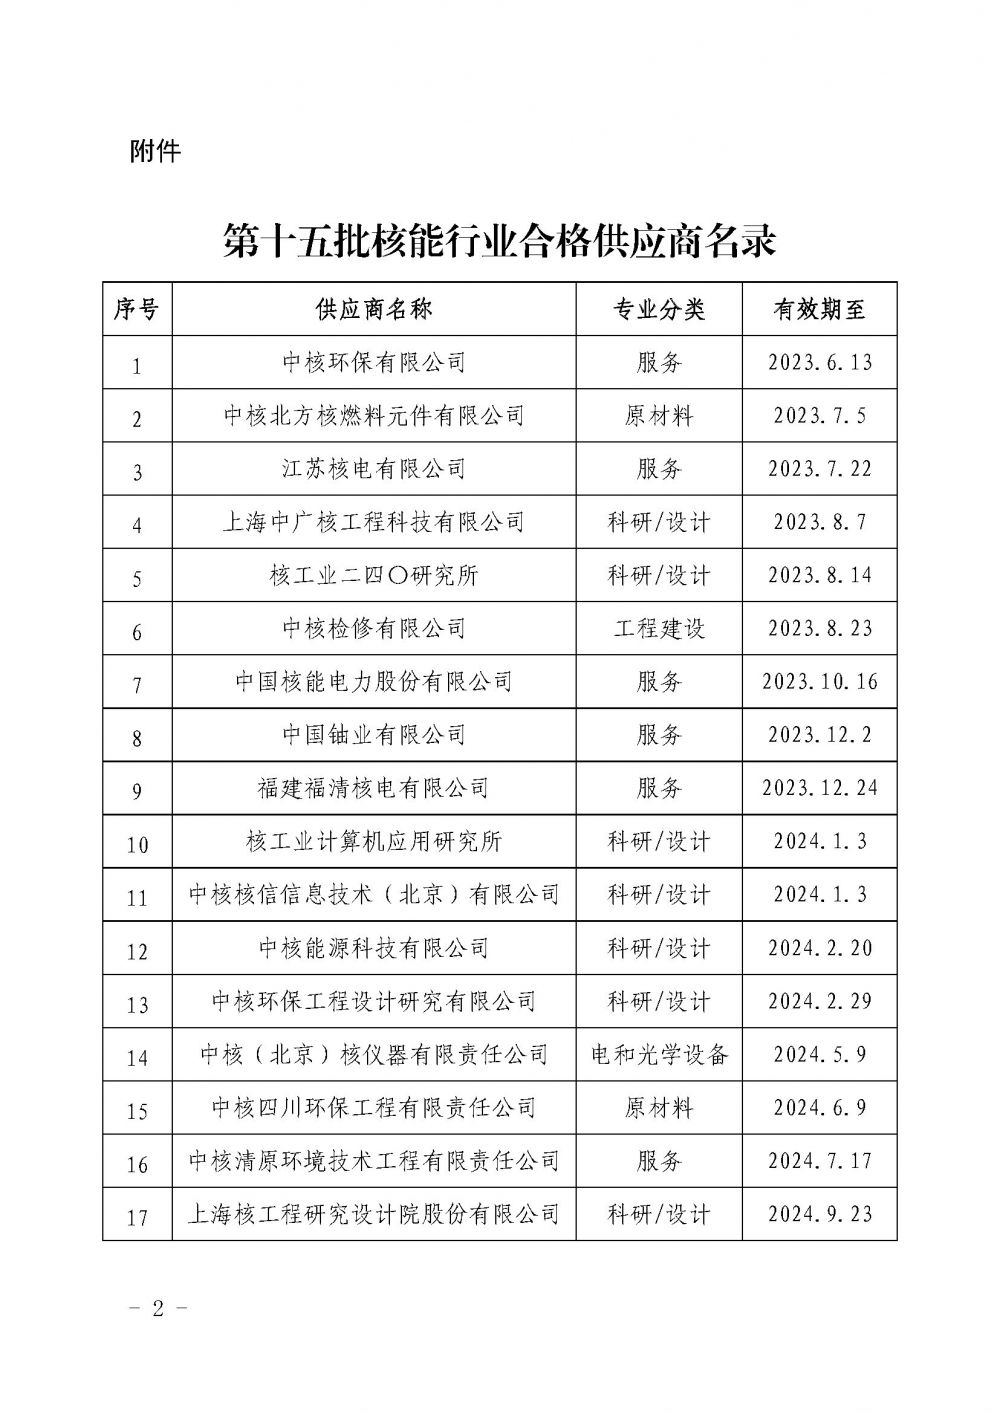 关于发布中国核能行业协会核能行业第十五批合格供应商名录的公告_页面_2.jpg